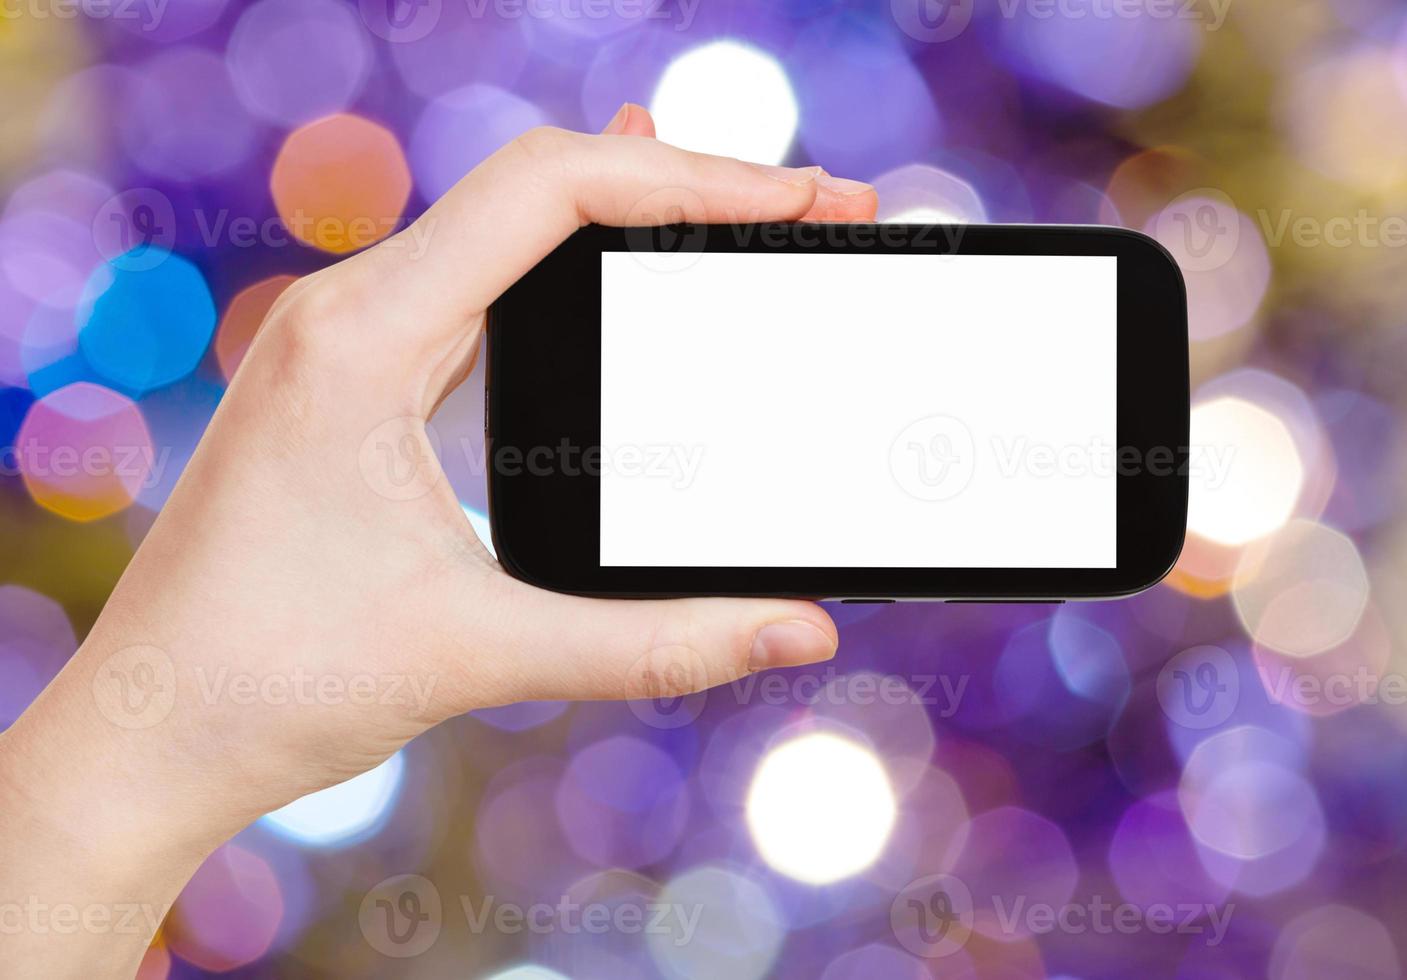 mano con smartphone sobre fondo violeta borroso foto